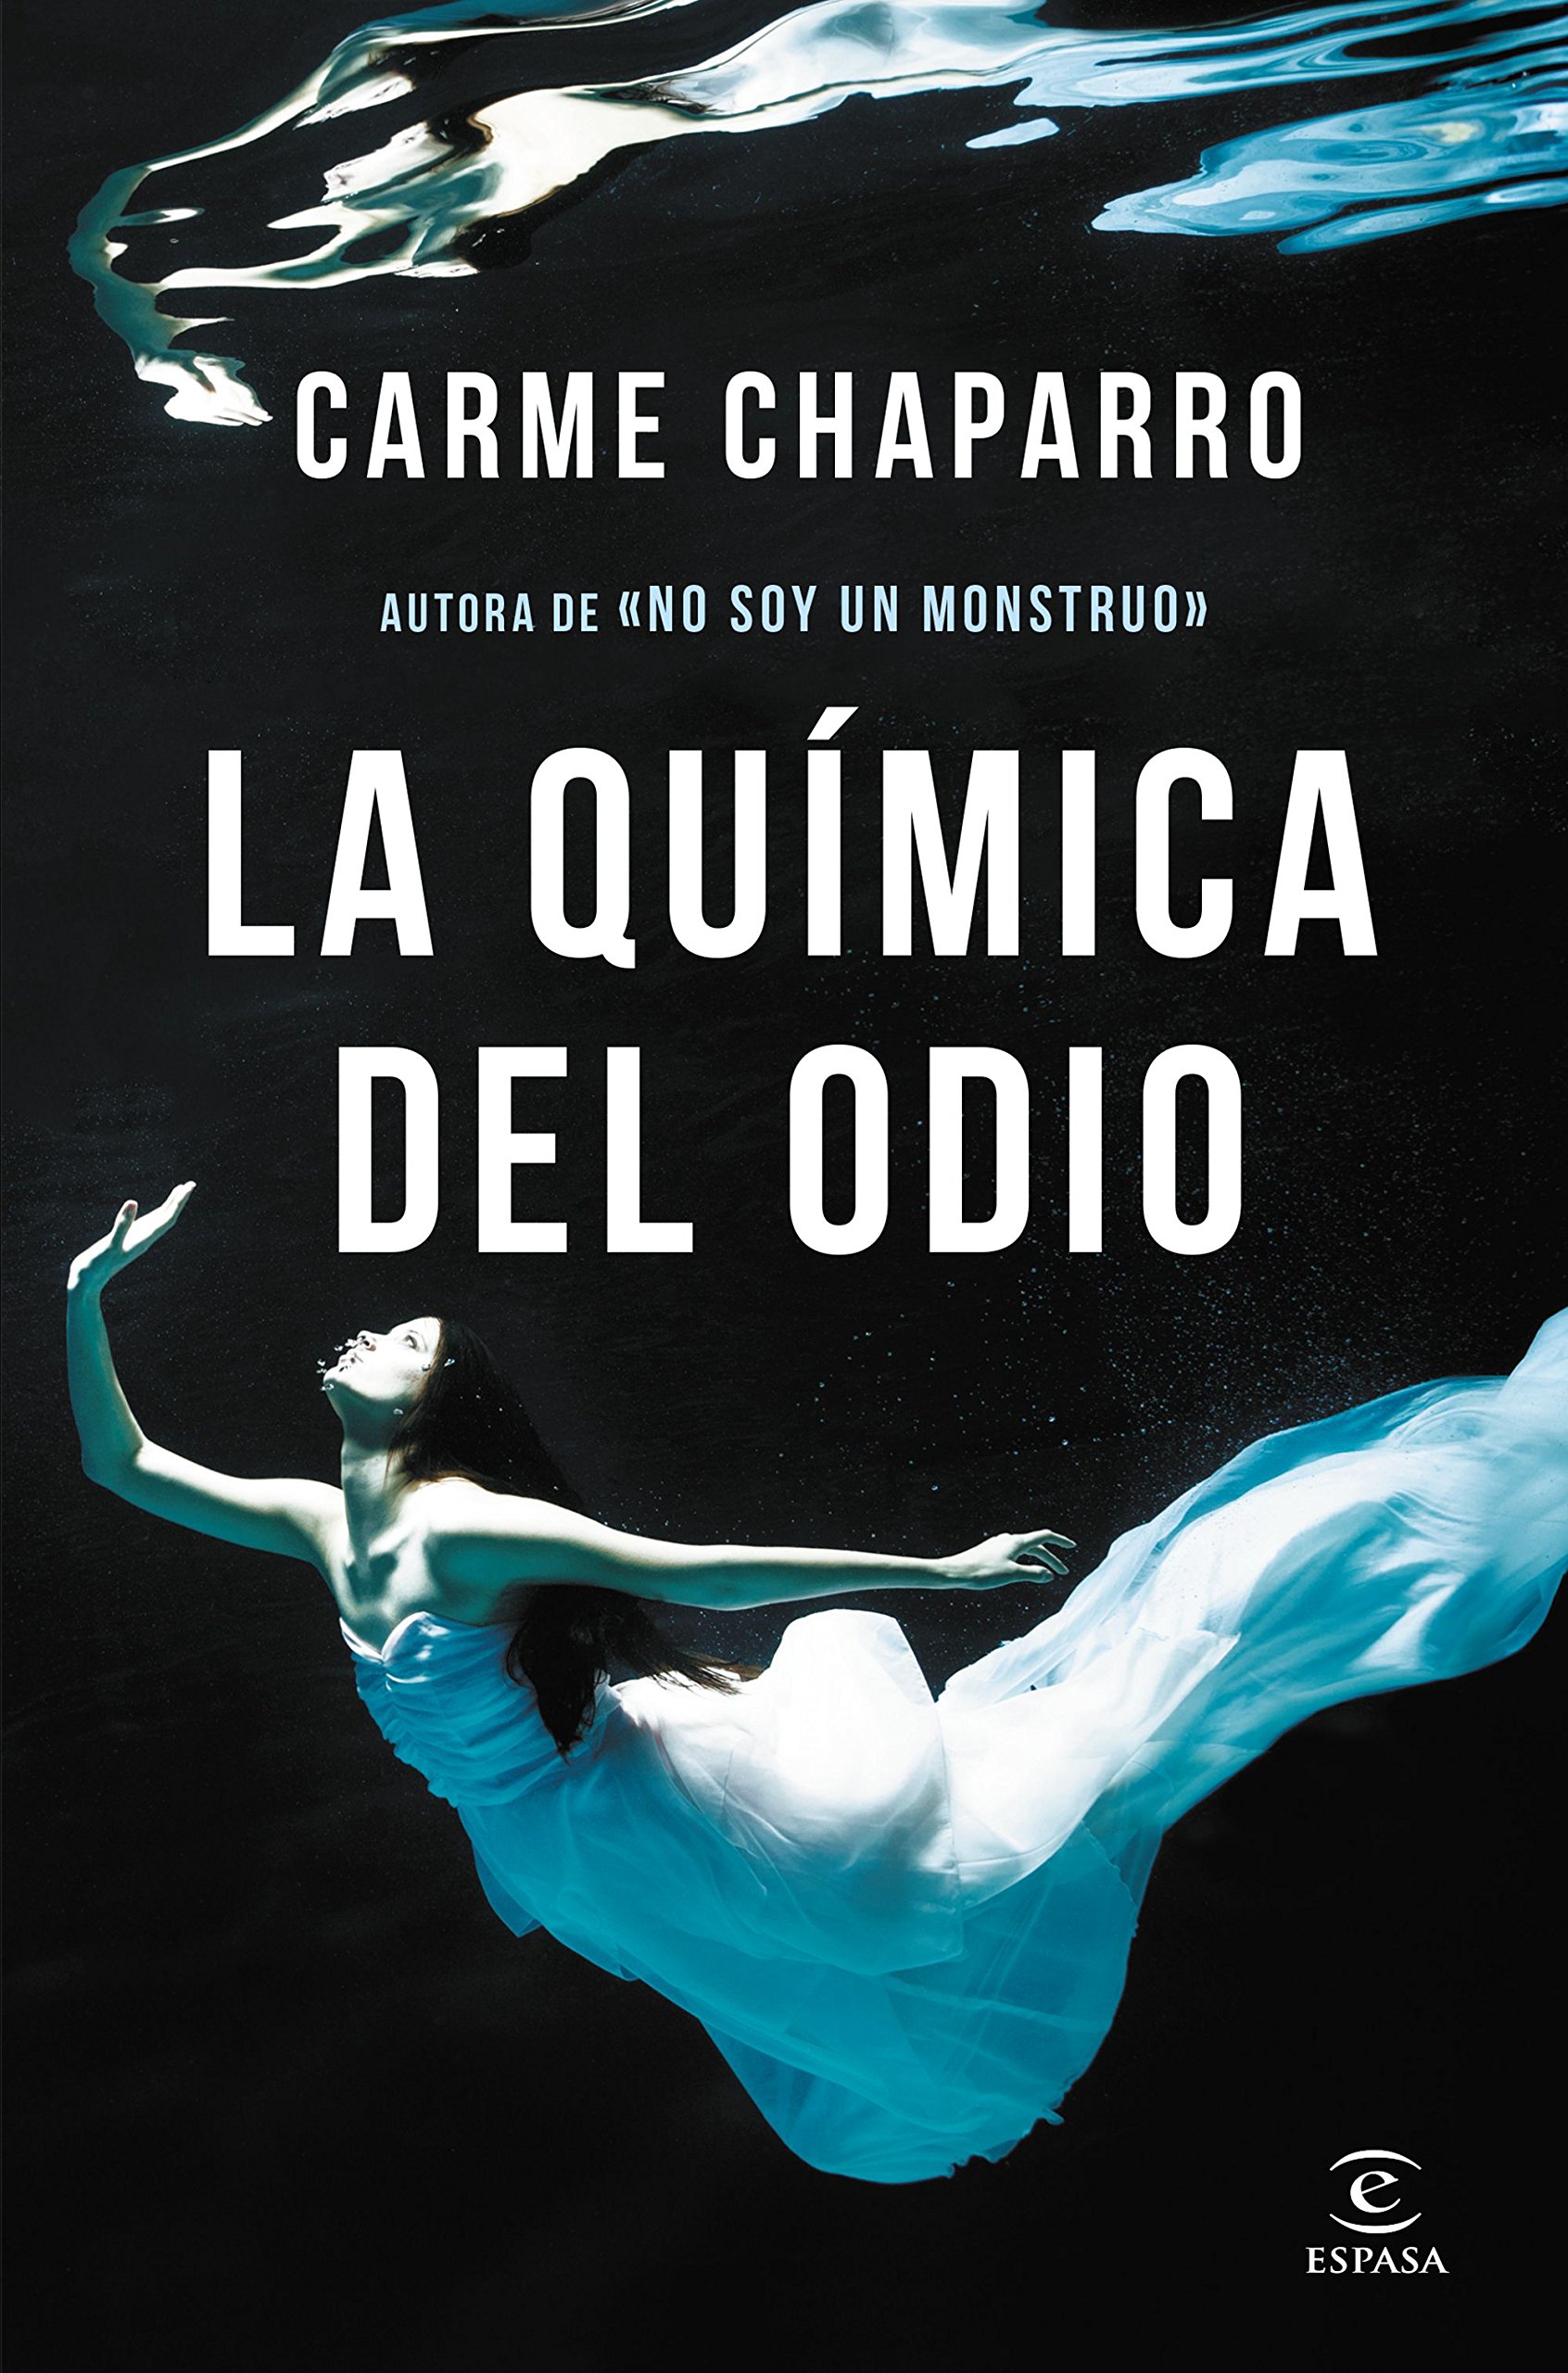 Carme Chaparro: «Escribir me supone una catarsis de la que salgo purificada»